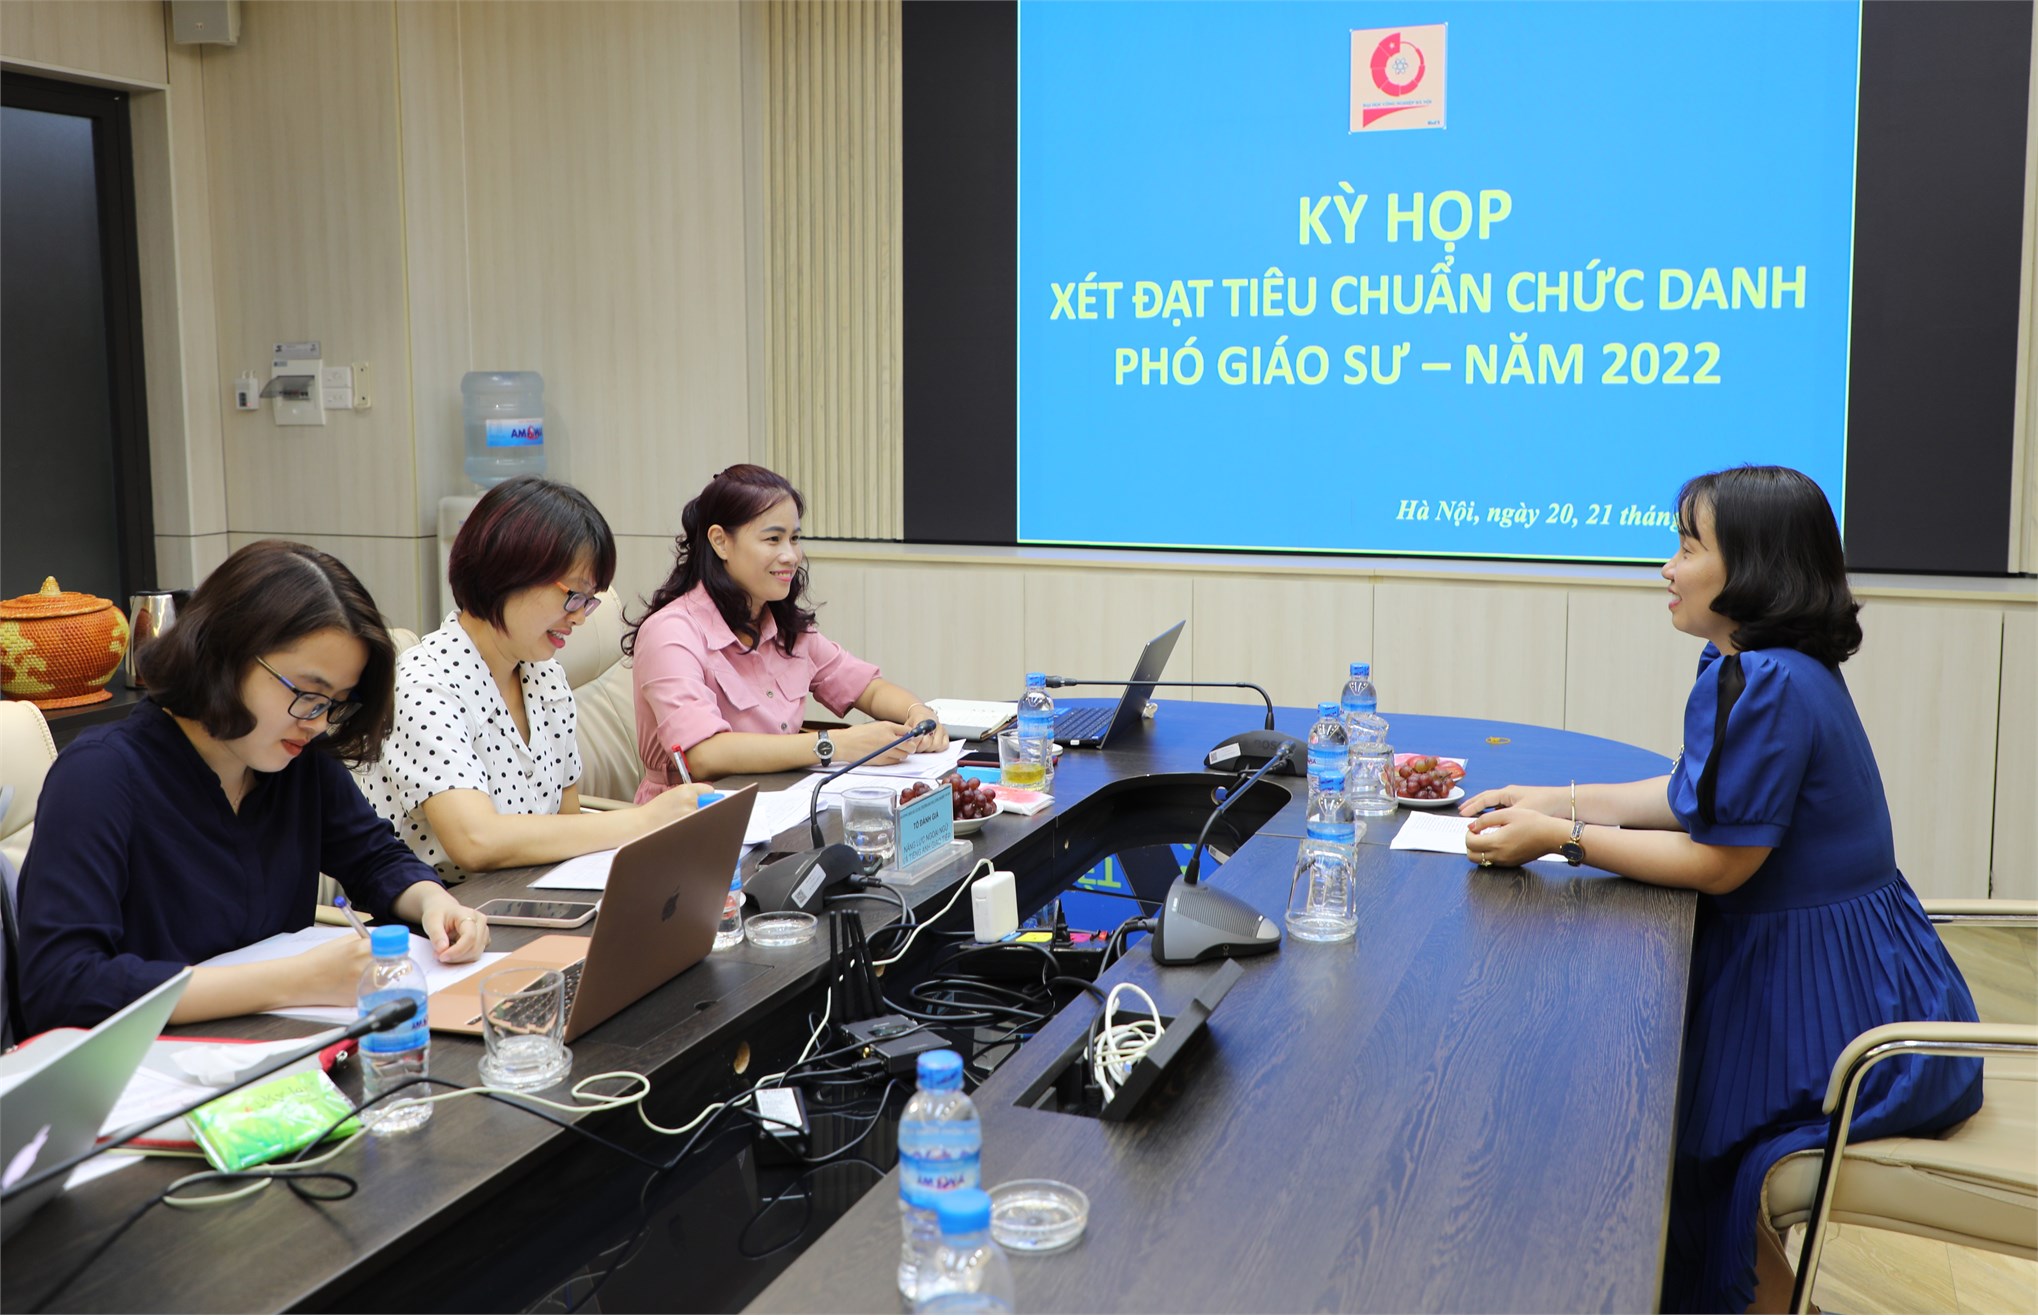 Hội đồng Giáo sư cơ sở Trường Đại học Công nghiệp Hà Nội tổ chức xét đạt tiêu chuẩn chức danh Giáo sư, Phó giáo sư năm 2022